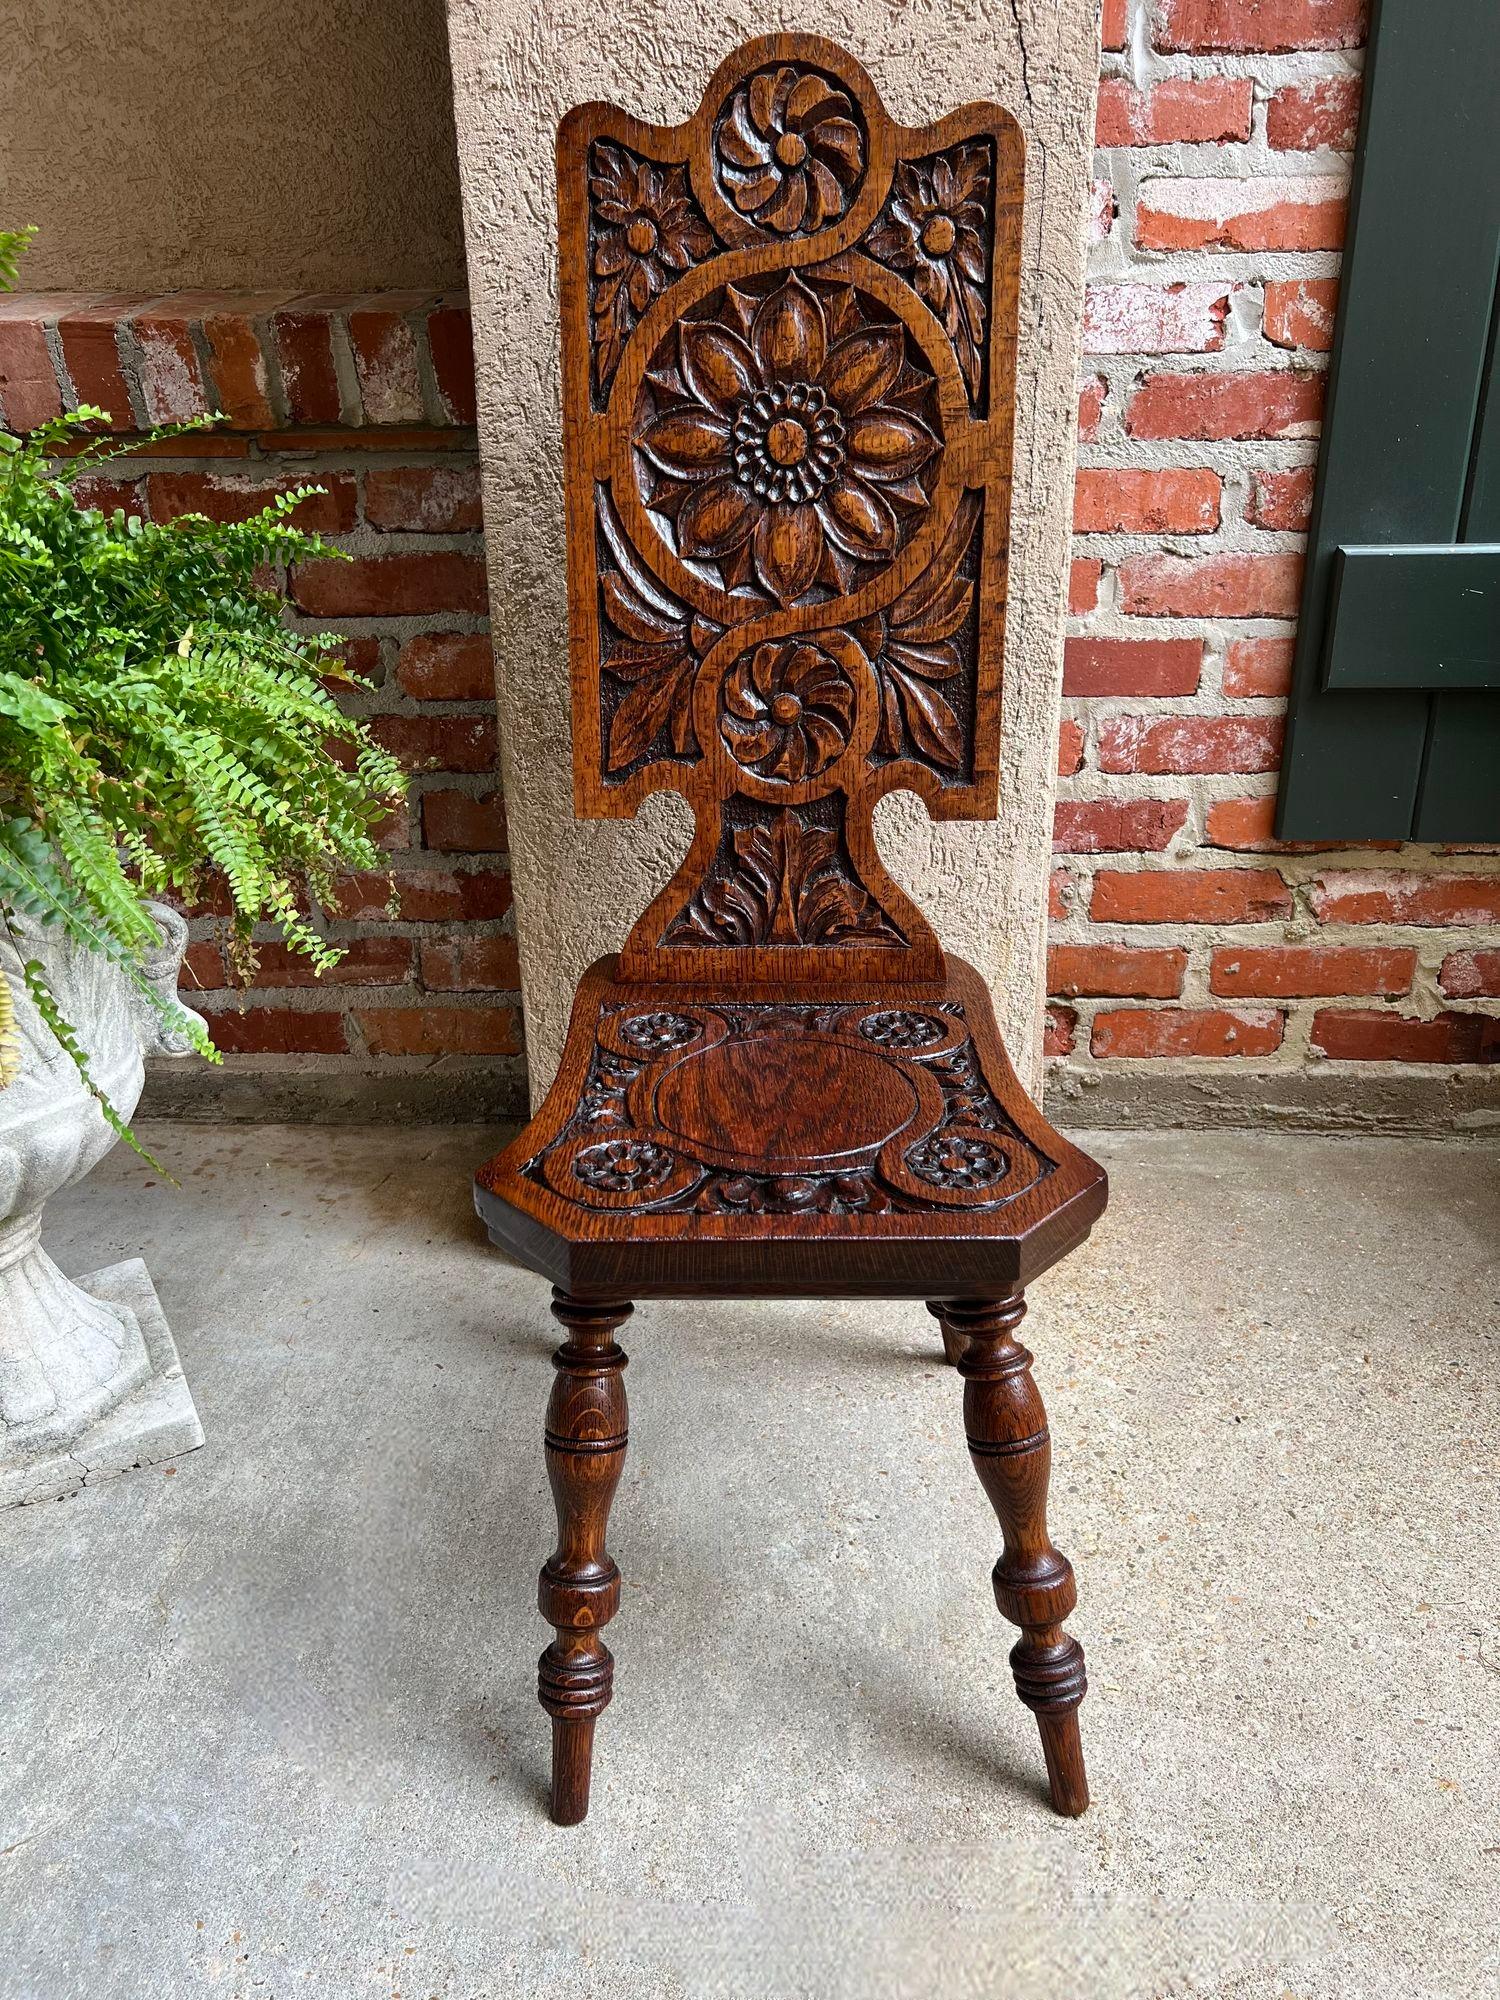 Antike englische Spinning Wheel Chair geschnitzt Eiche Halle Kamin Herd Stuhl.

Direkt aus England, ein wunderschöner antiker englischer 